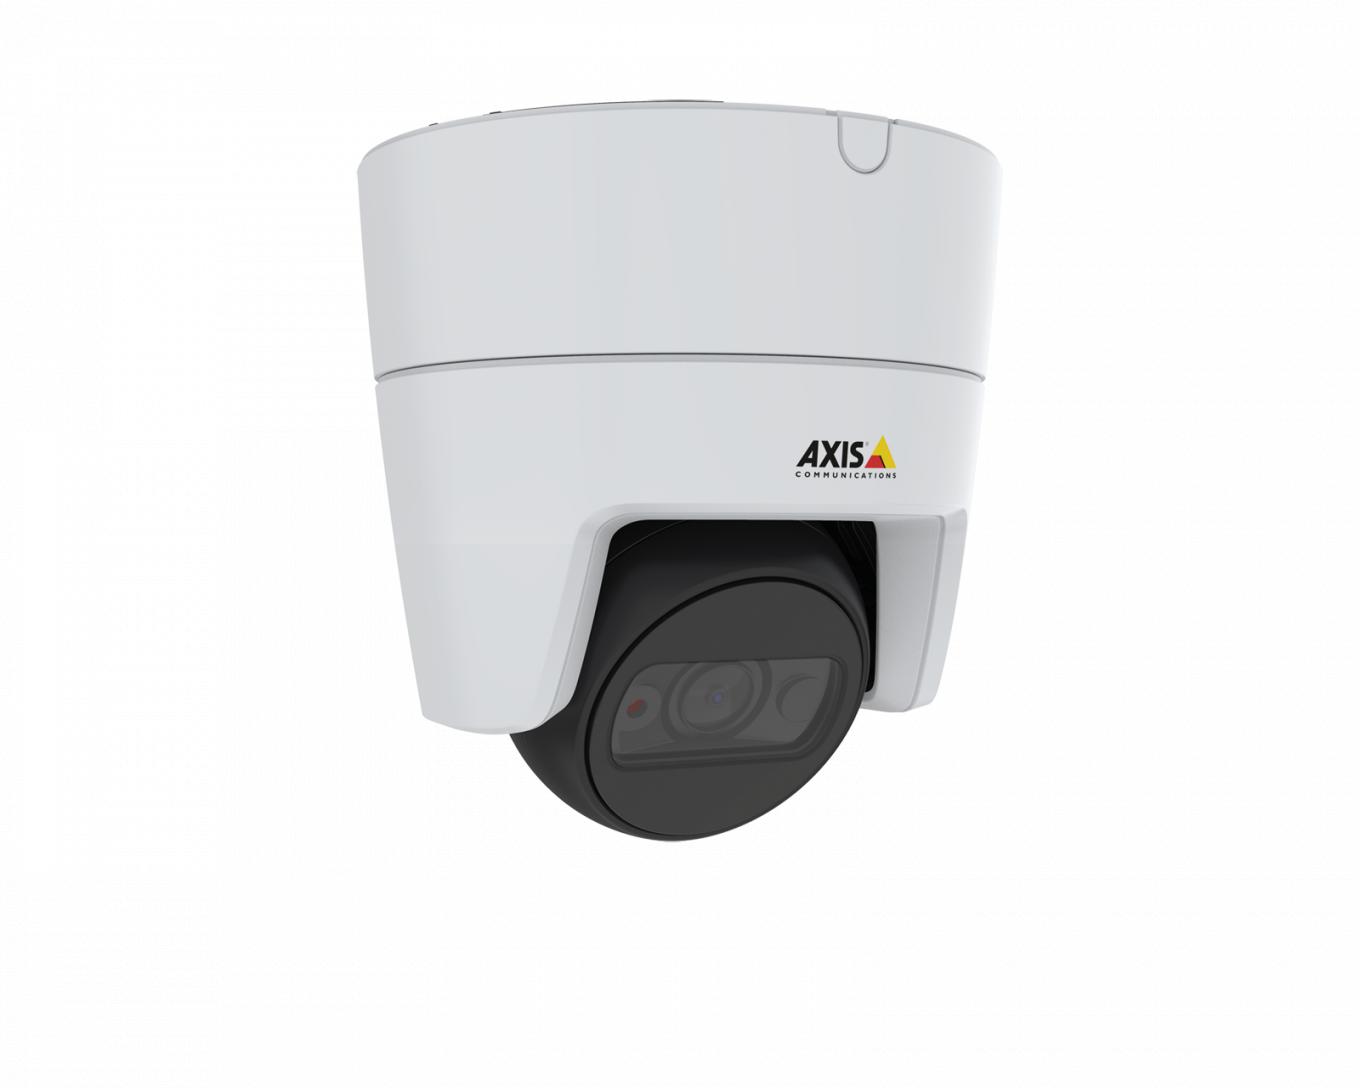 IP-камера AXIS M3115-LVE, установленная на потолке, вид под углом справа 